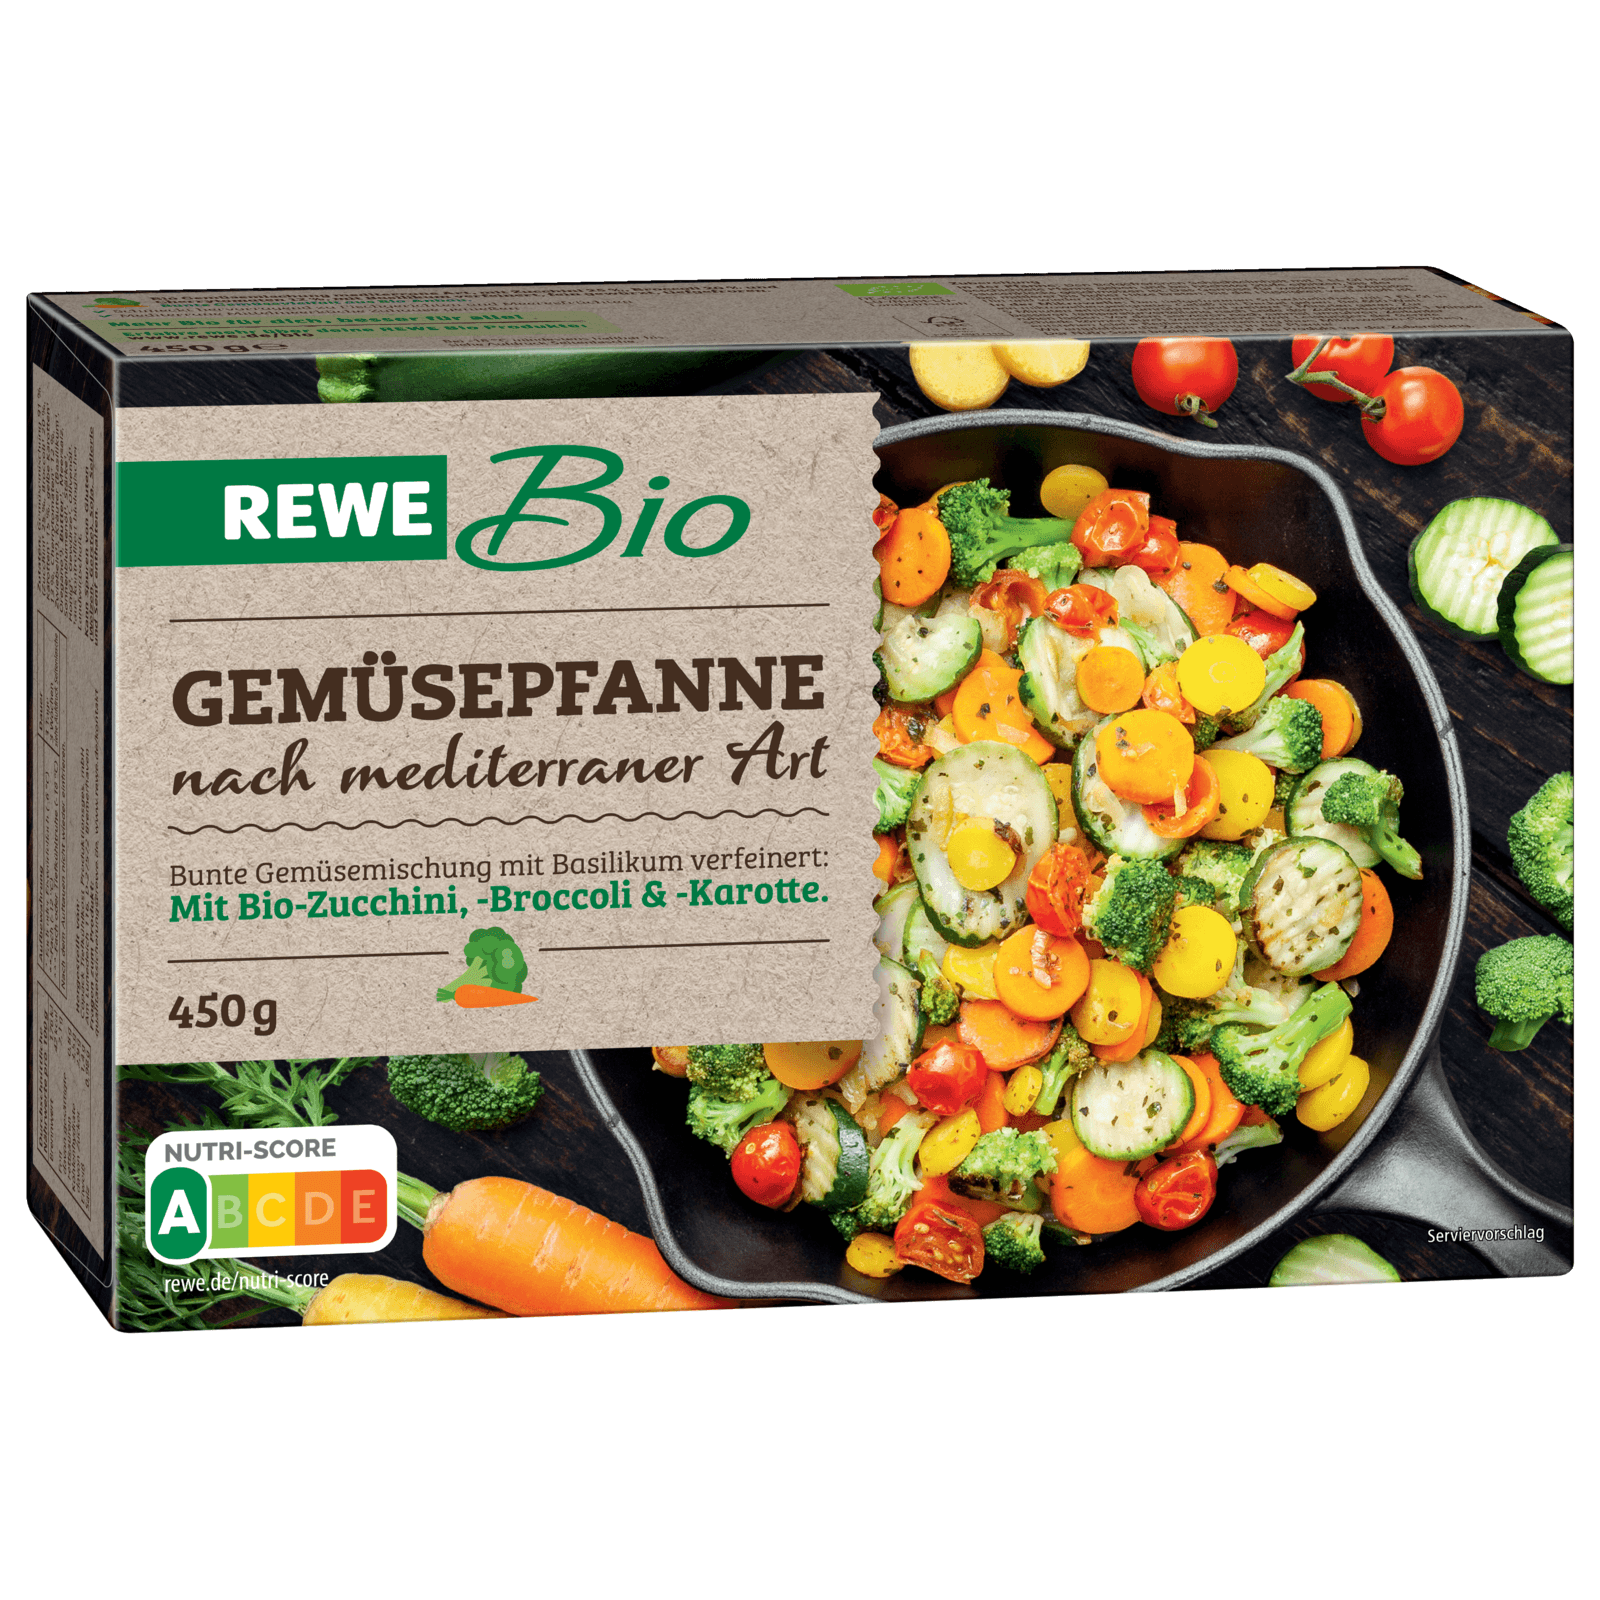 REWE Bio Gemüsepfanne mediterrane Art 450g